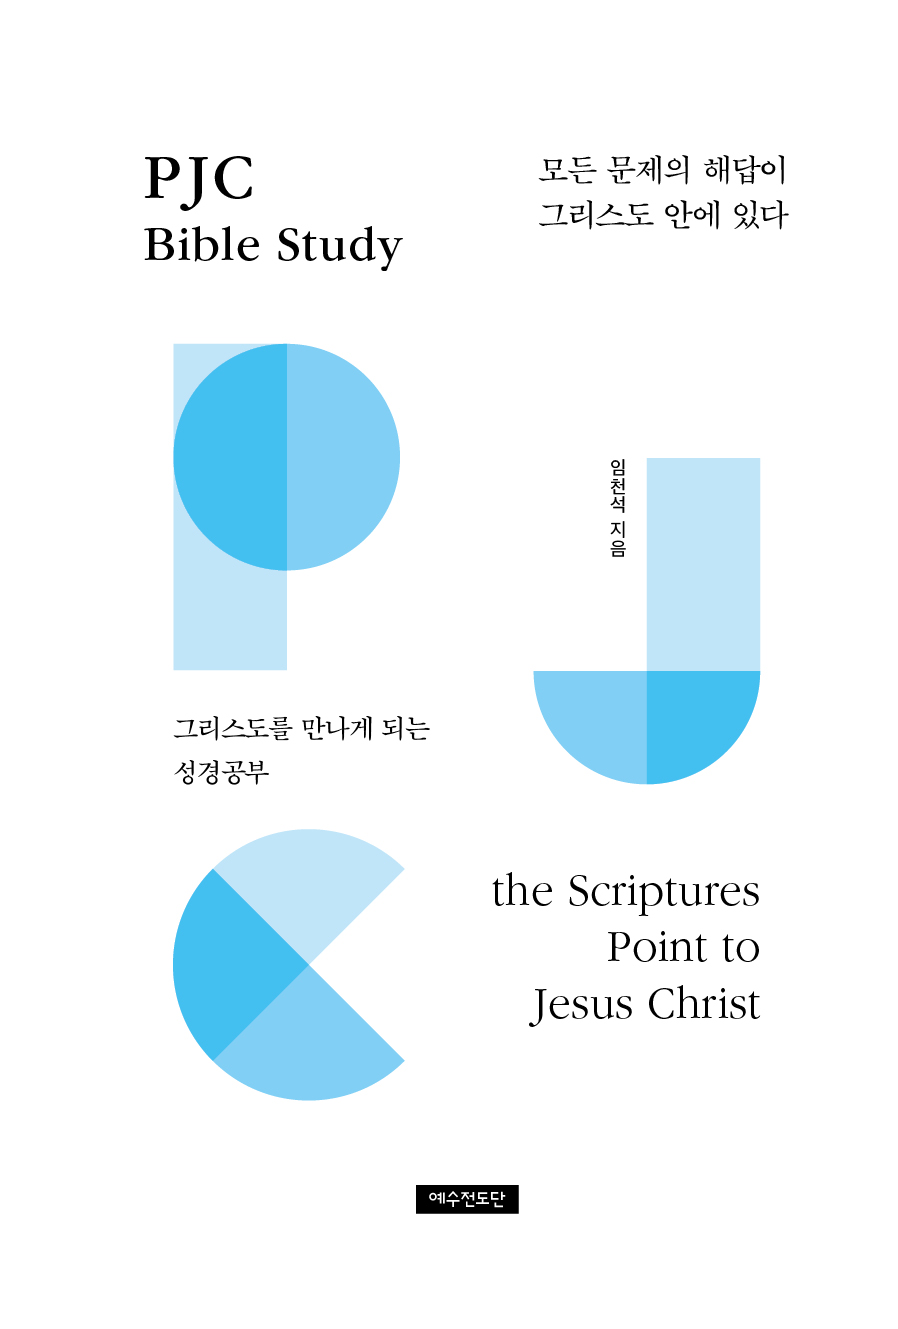 PJC Bible Study